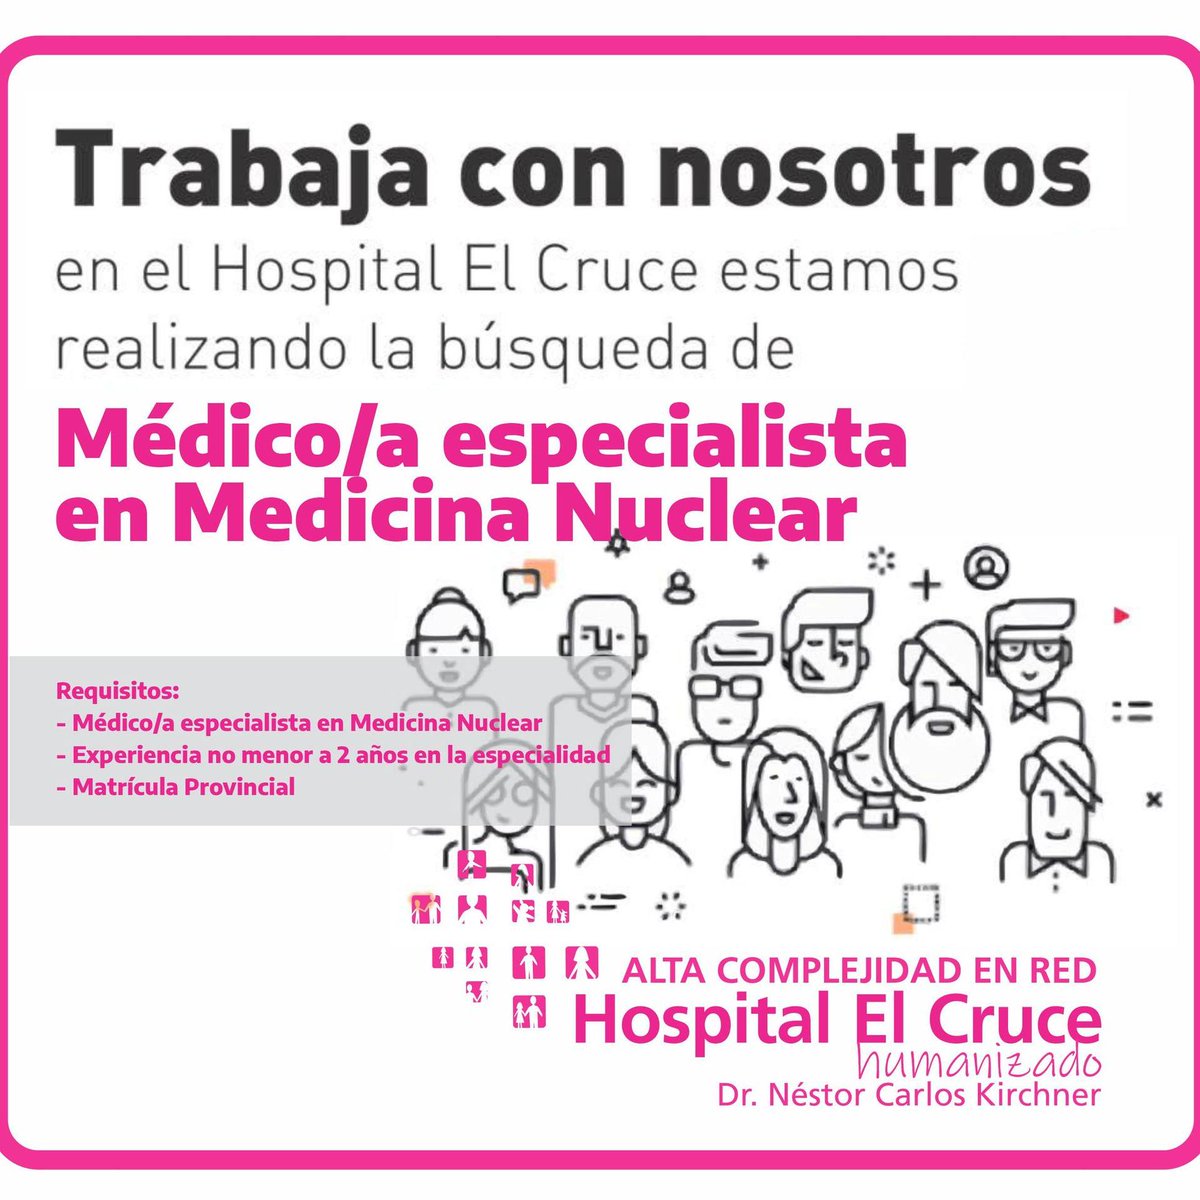 Hospital El Cruce (@ElCruceHospital) / Twitter